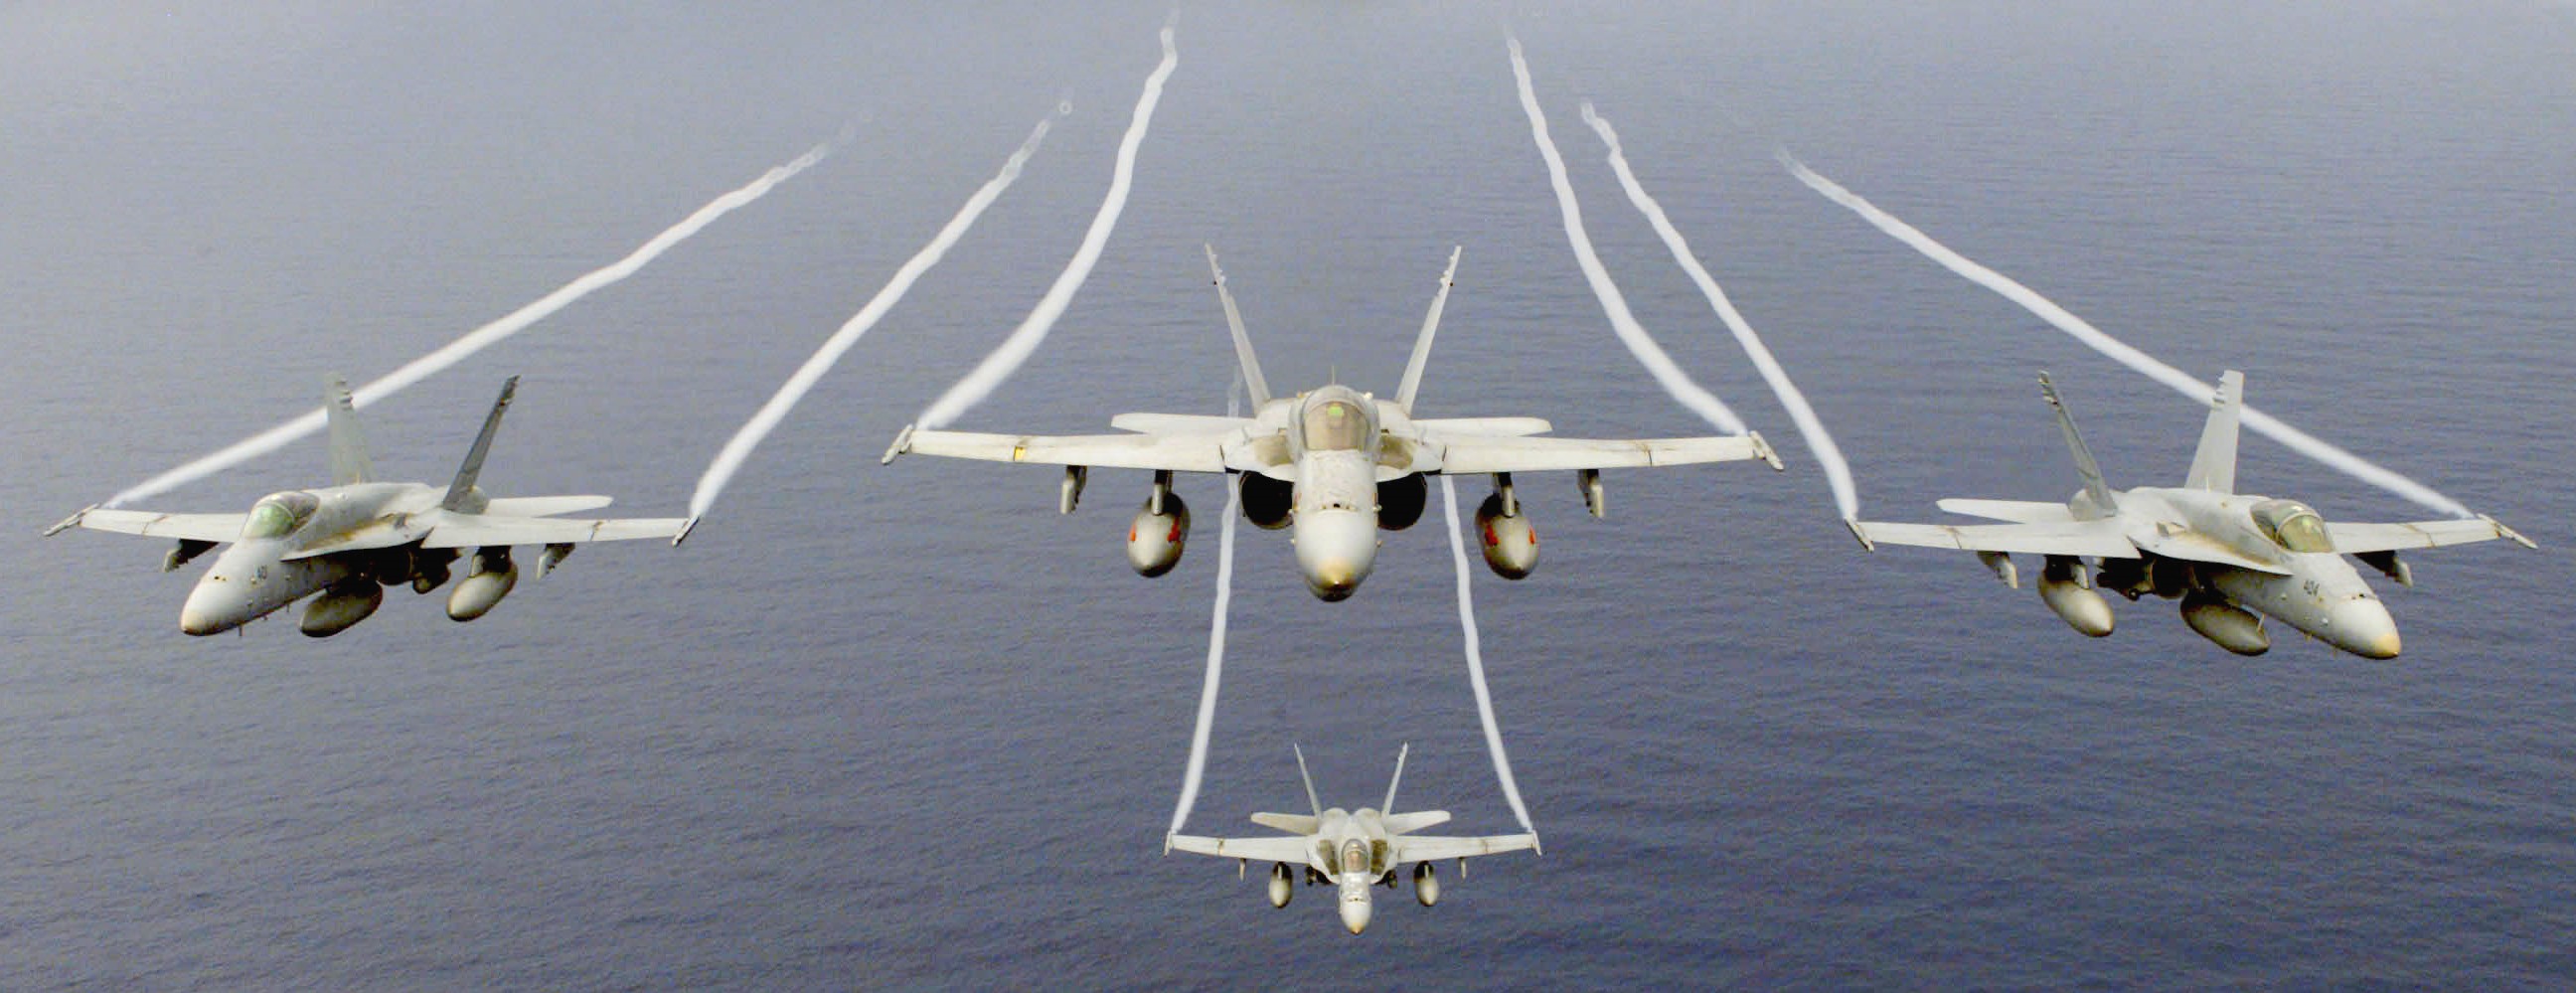 Было три самолета. F-18 Hornet. Авиация. Военный самолет над морем. Морская Авиация.